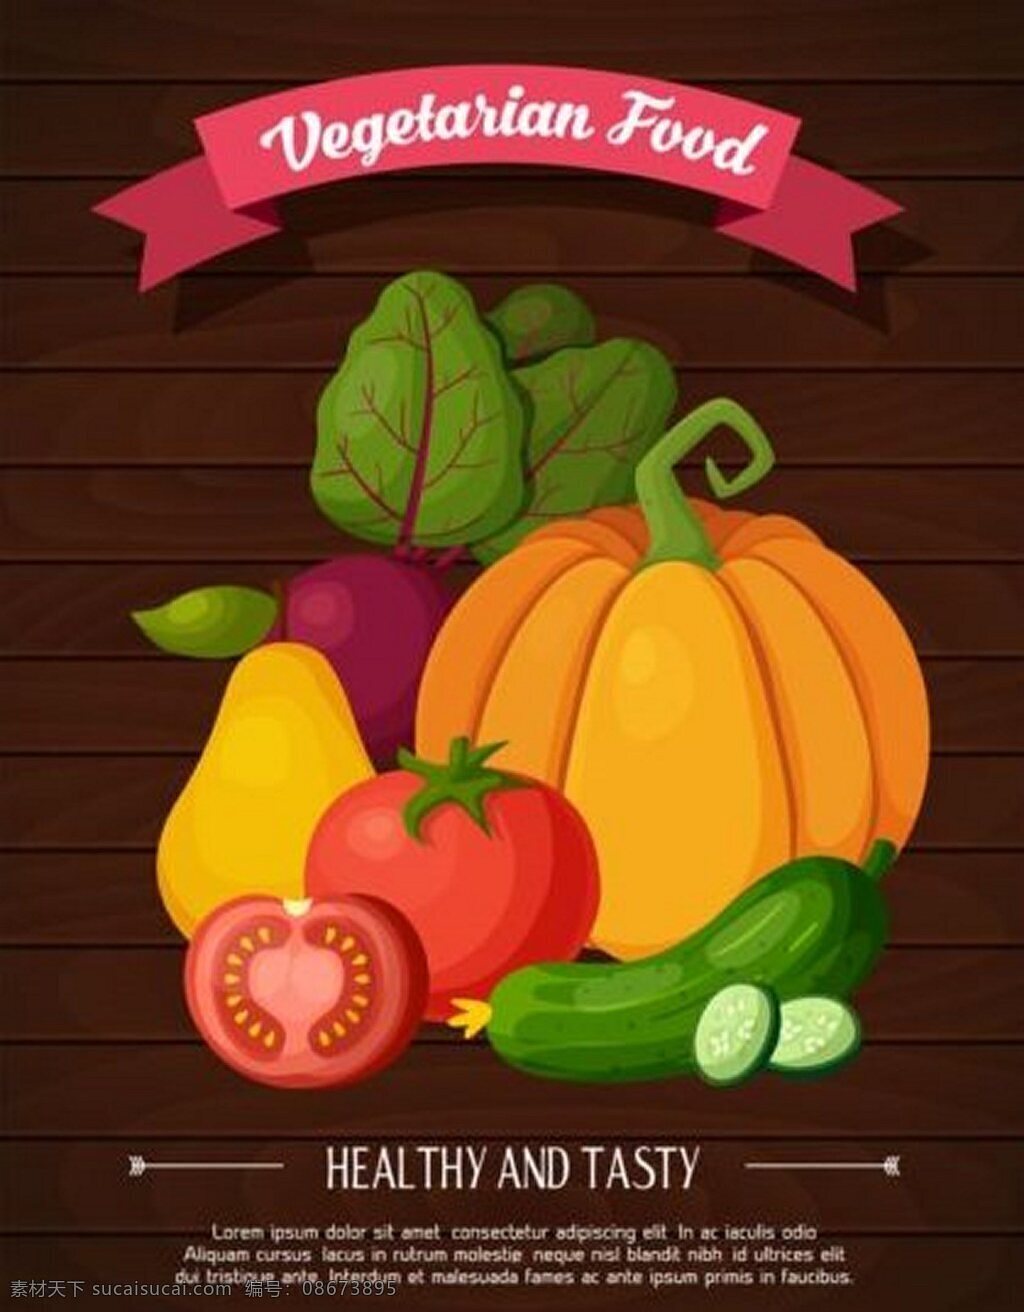 健康 食物 广告 背景 蔬菜 广告背景 矢量素材